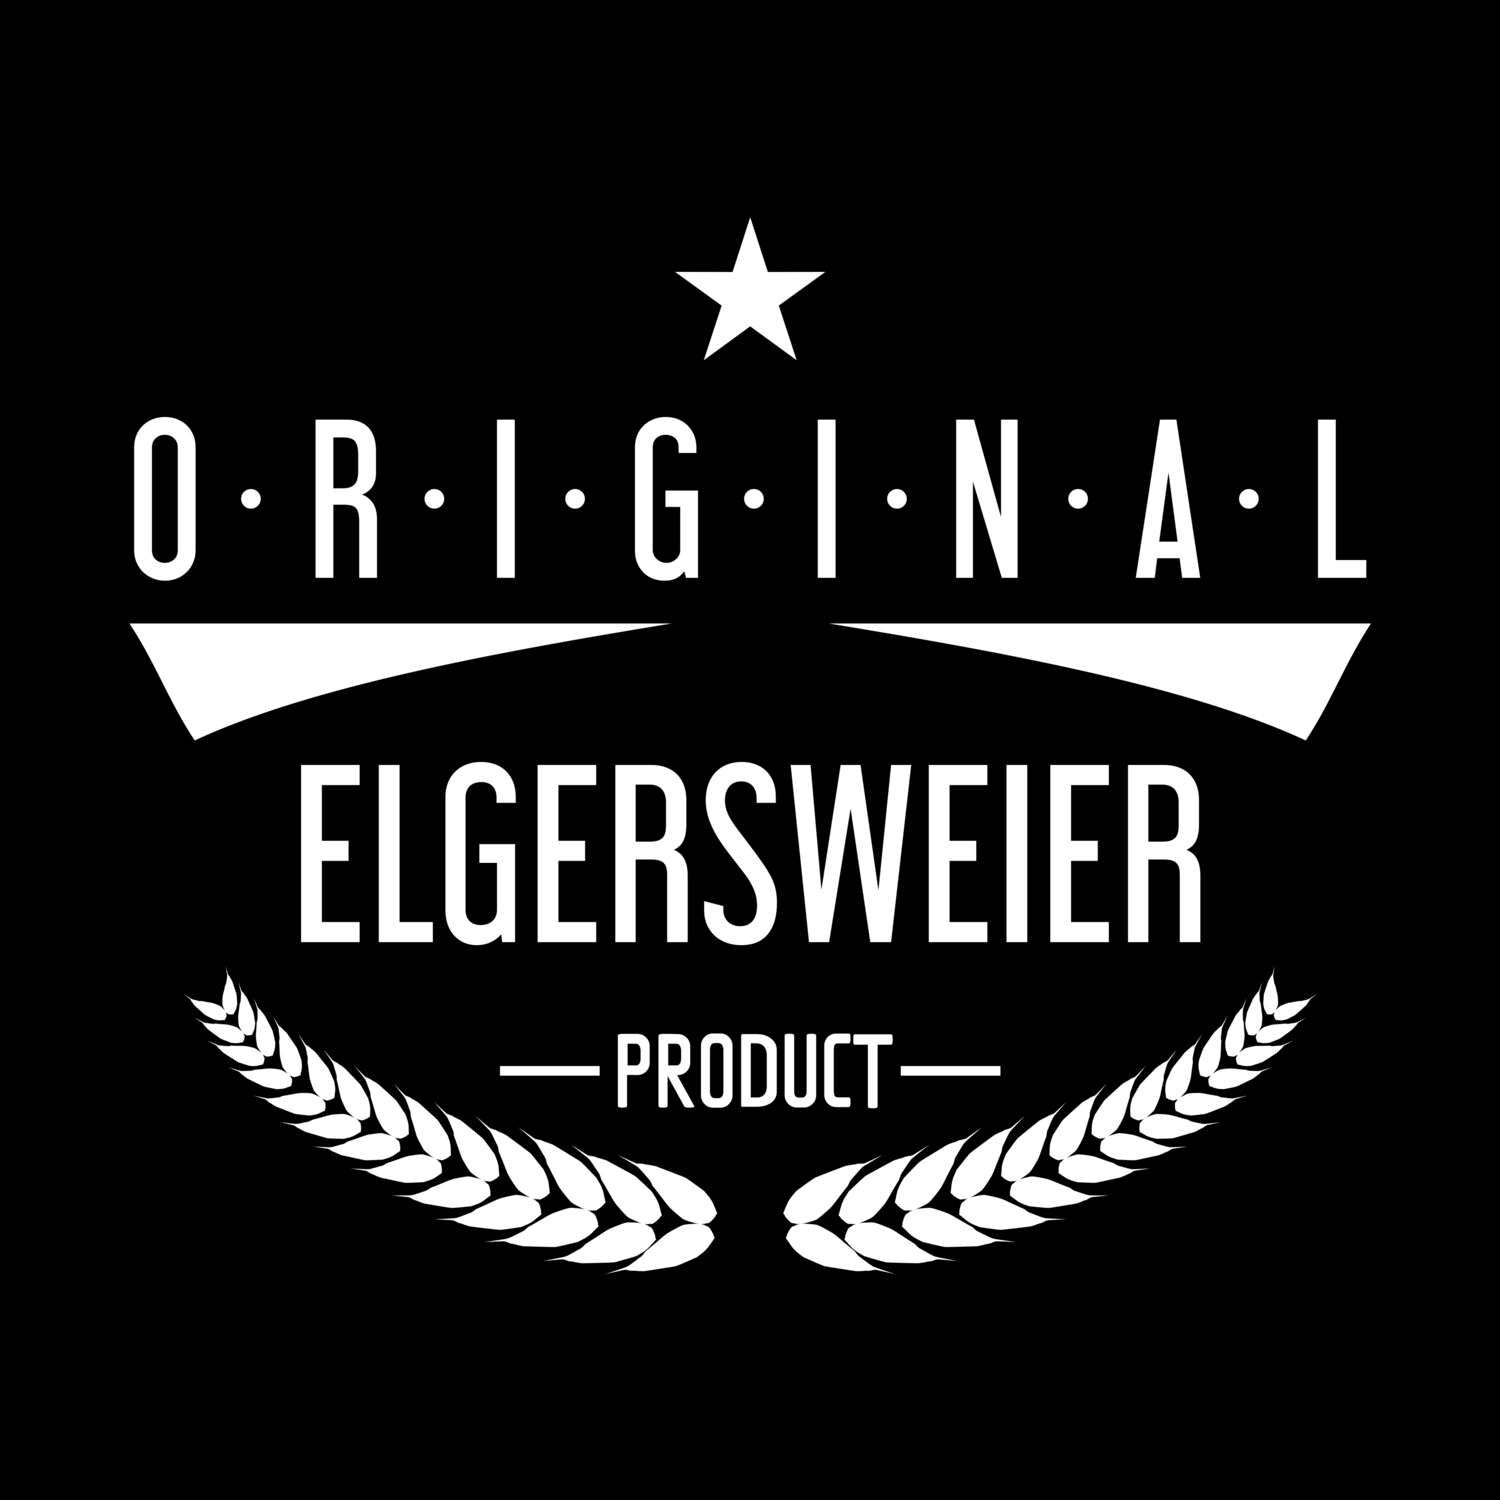 Elgersweier T-Shirt »Original Product«